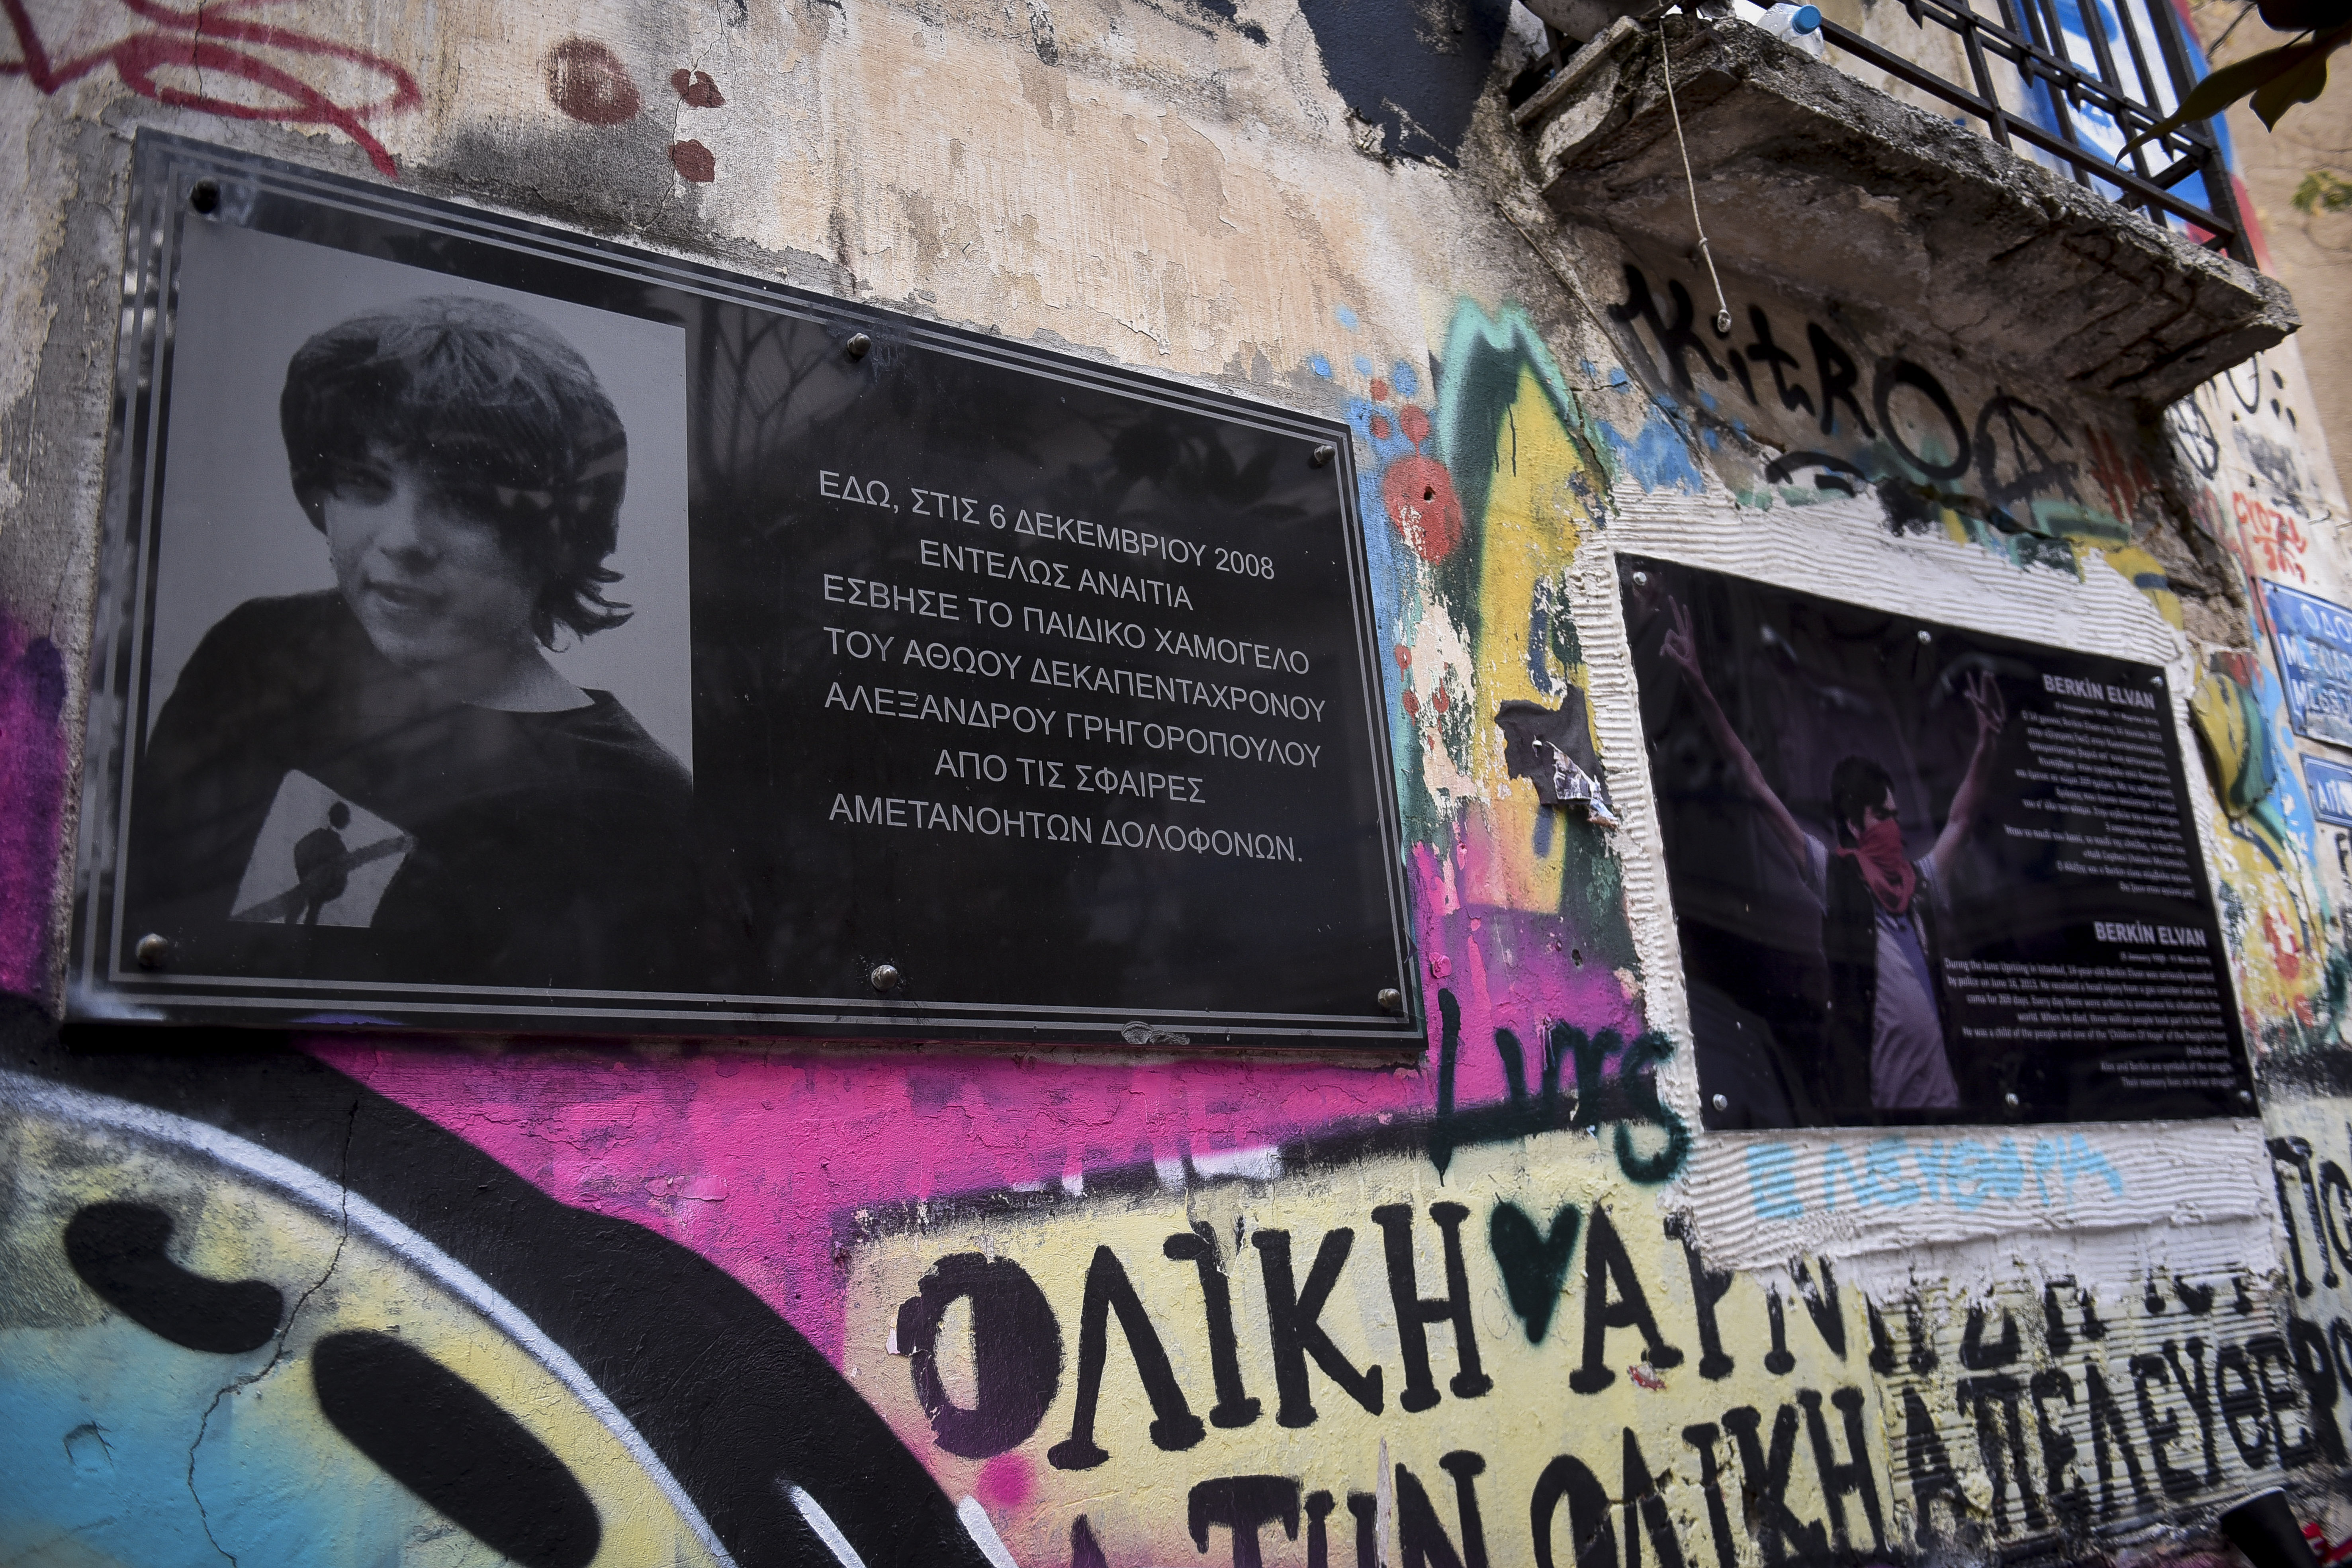 15 χρόνια μετά από τη δολοφονία του Αλέξανδρου Γρηγορόπουλου, η μνήμη παραμένει ζωντανή